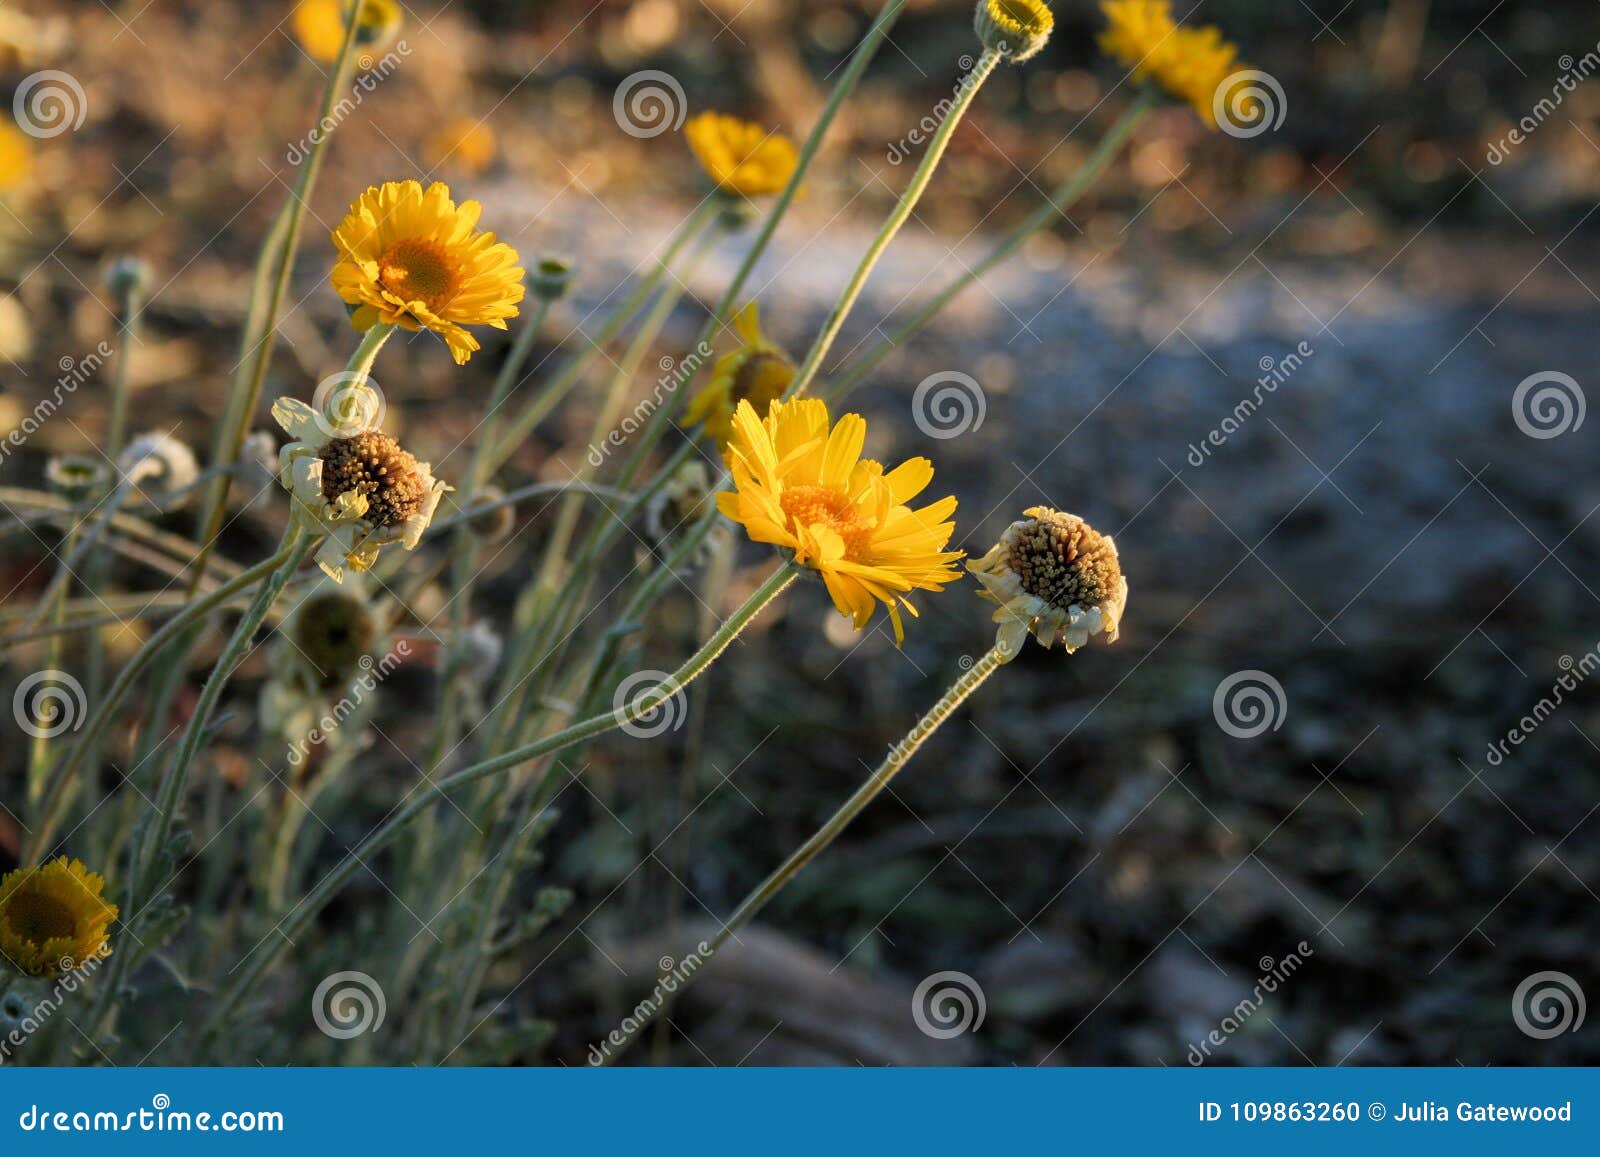 brittlebush desert flowers